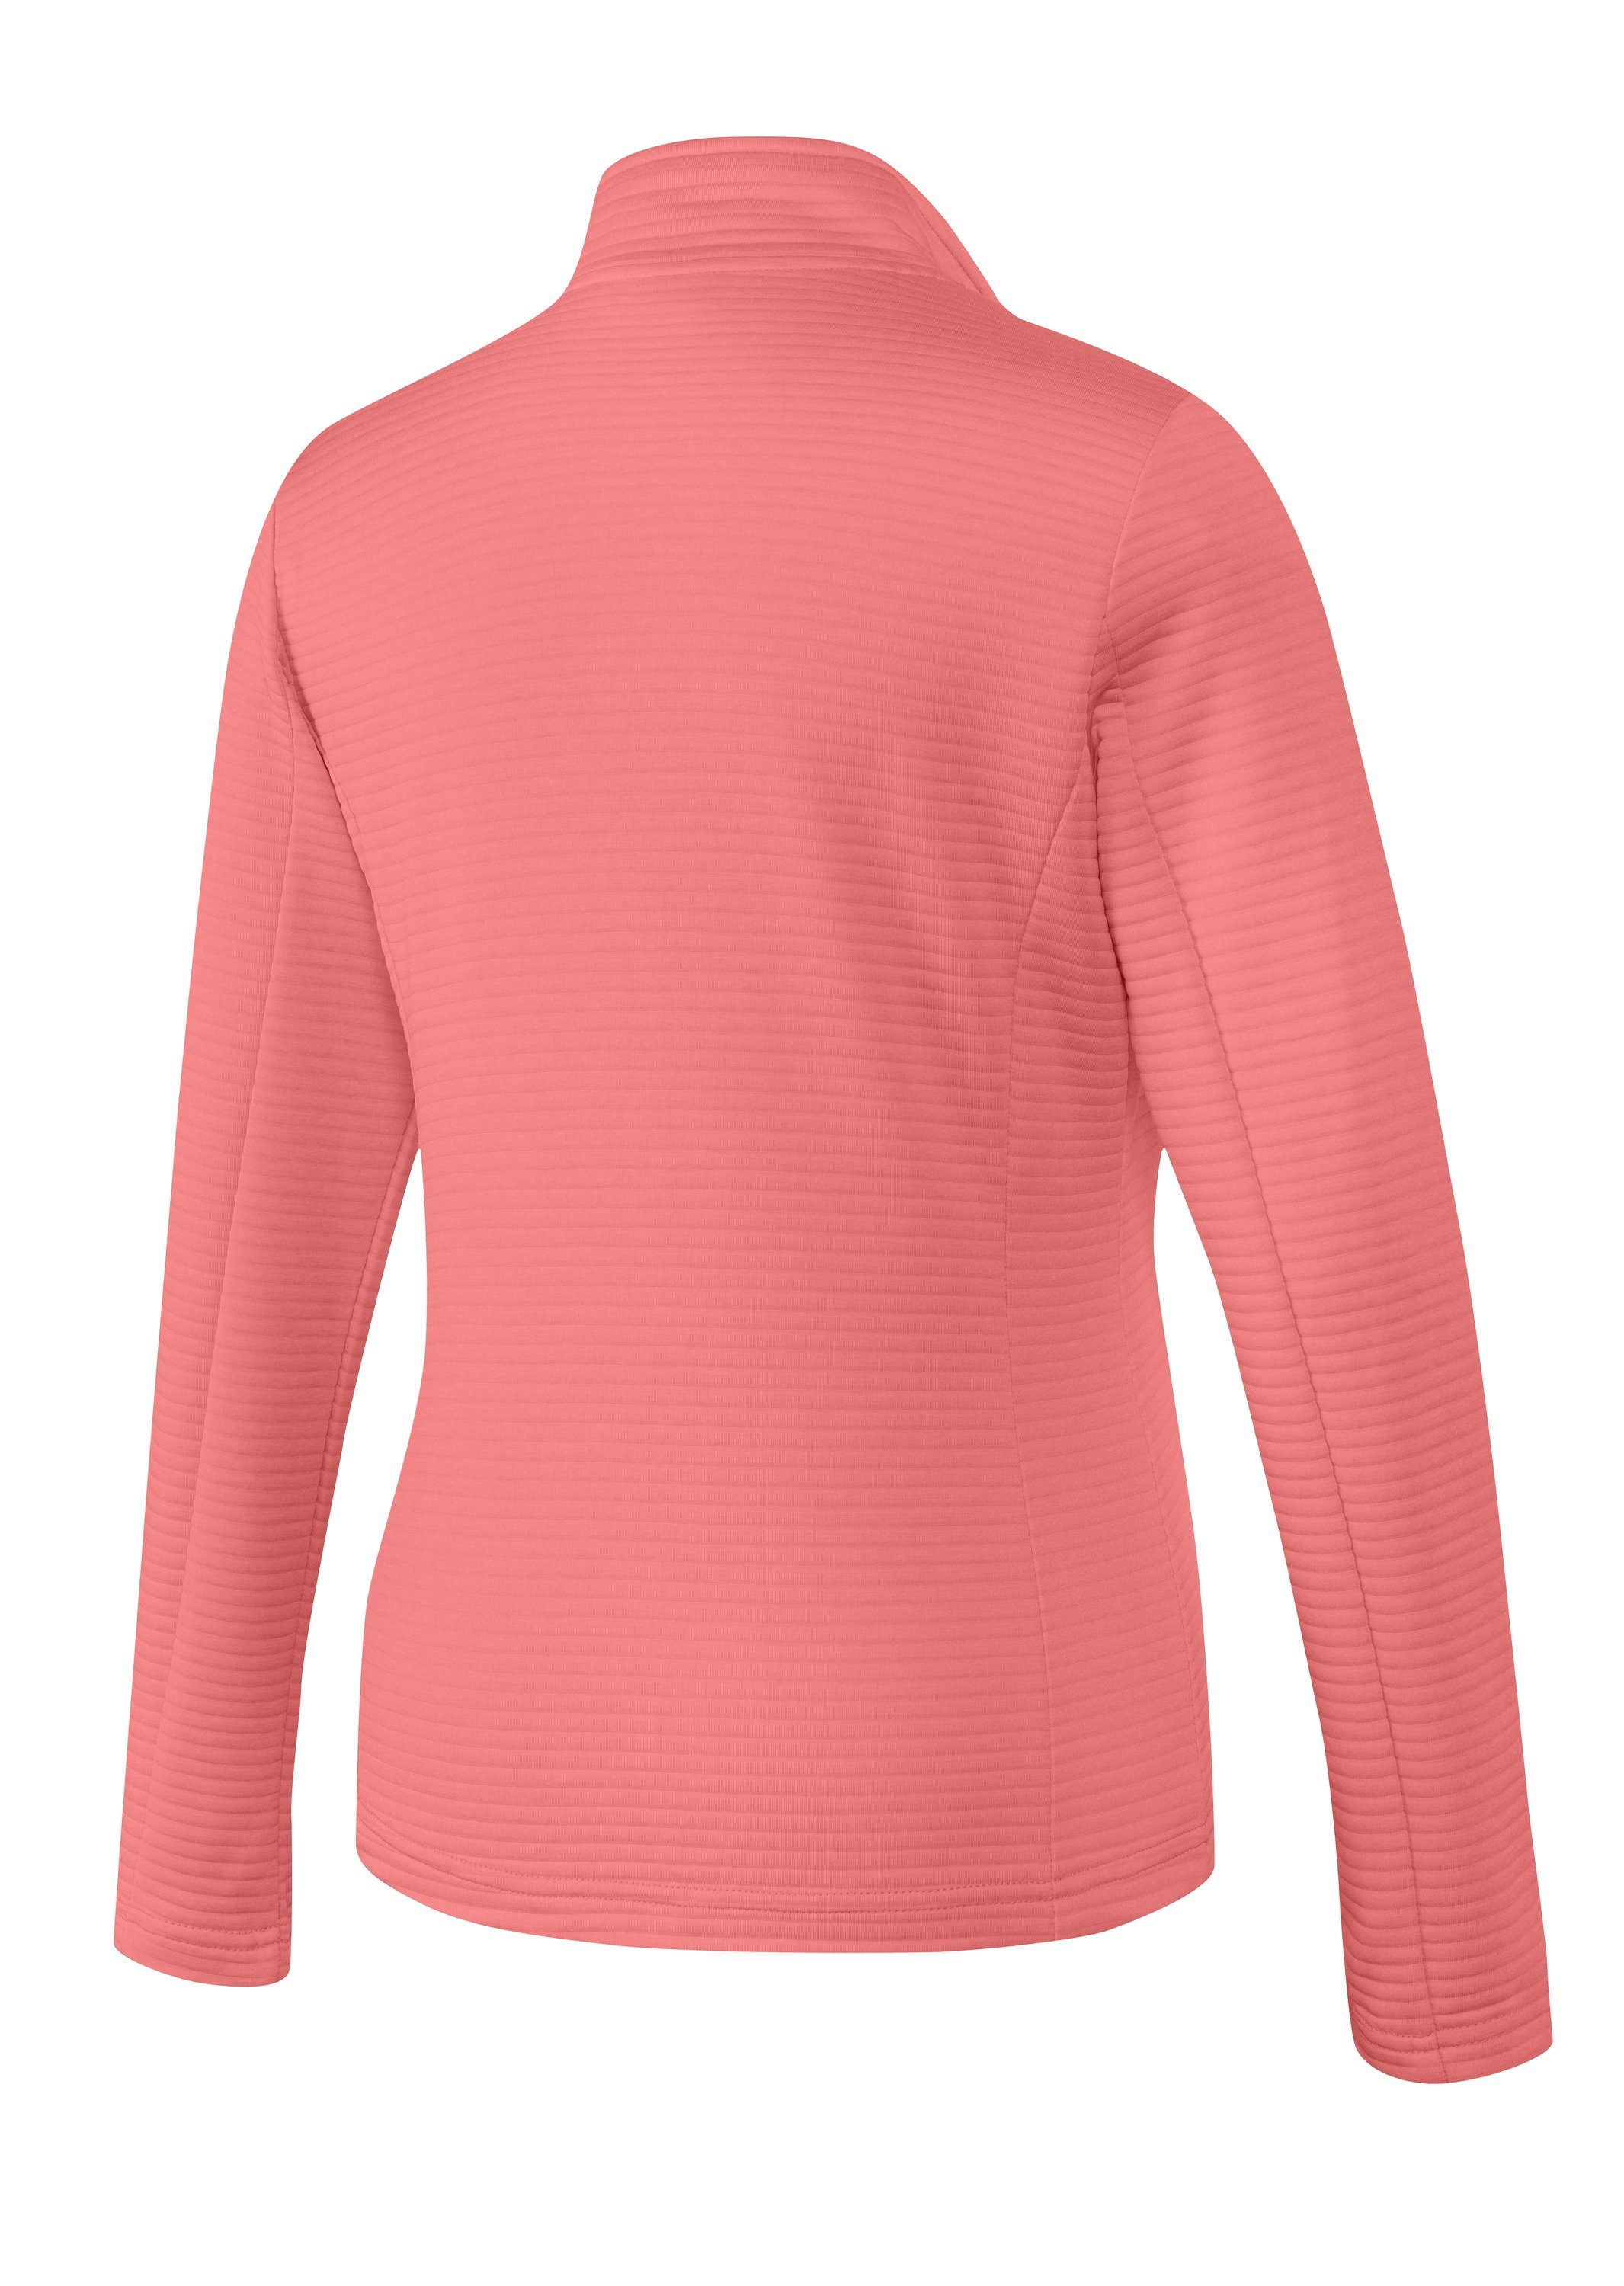 Joy Sportswear melange coral PEGGY pink Jacke Trainingsjacke